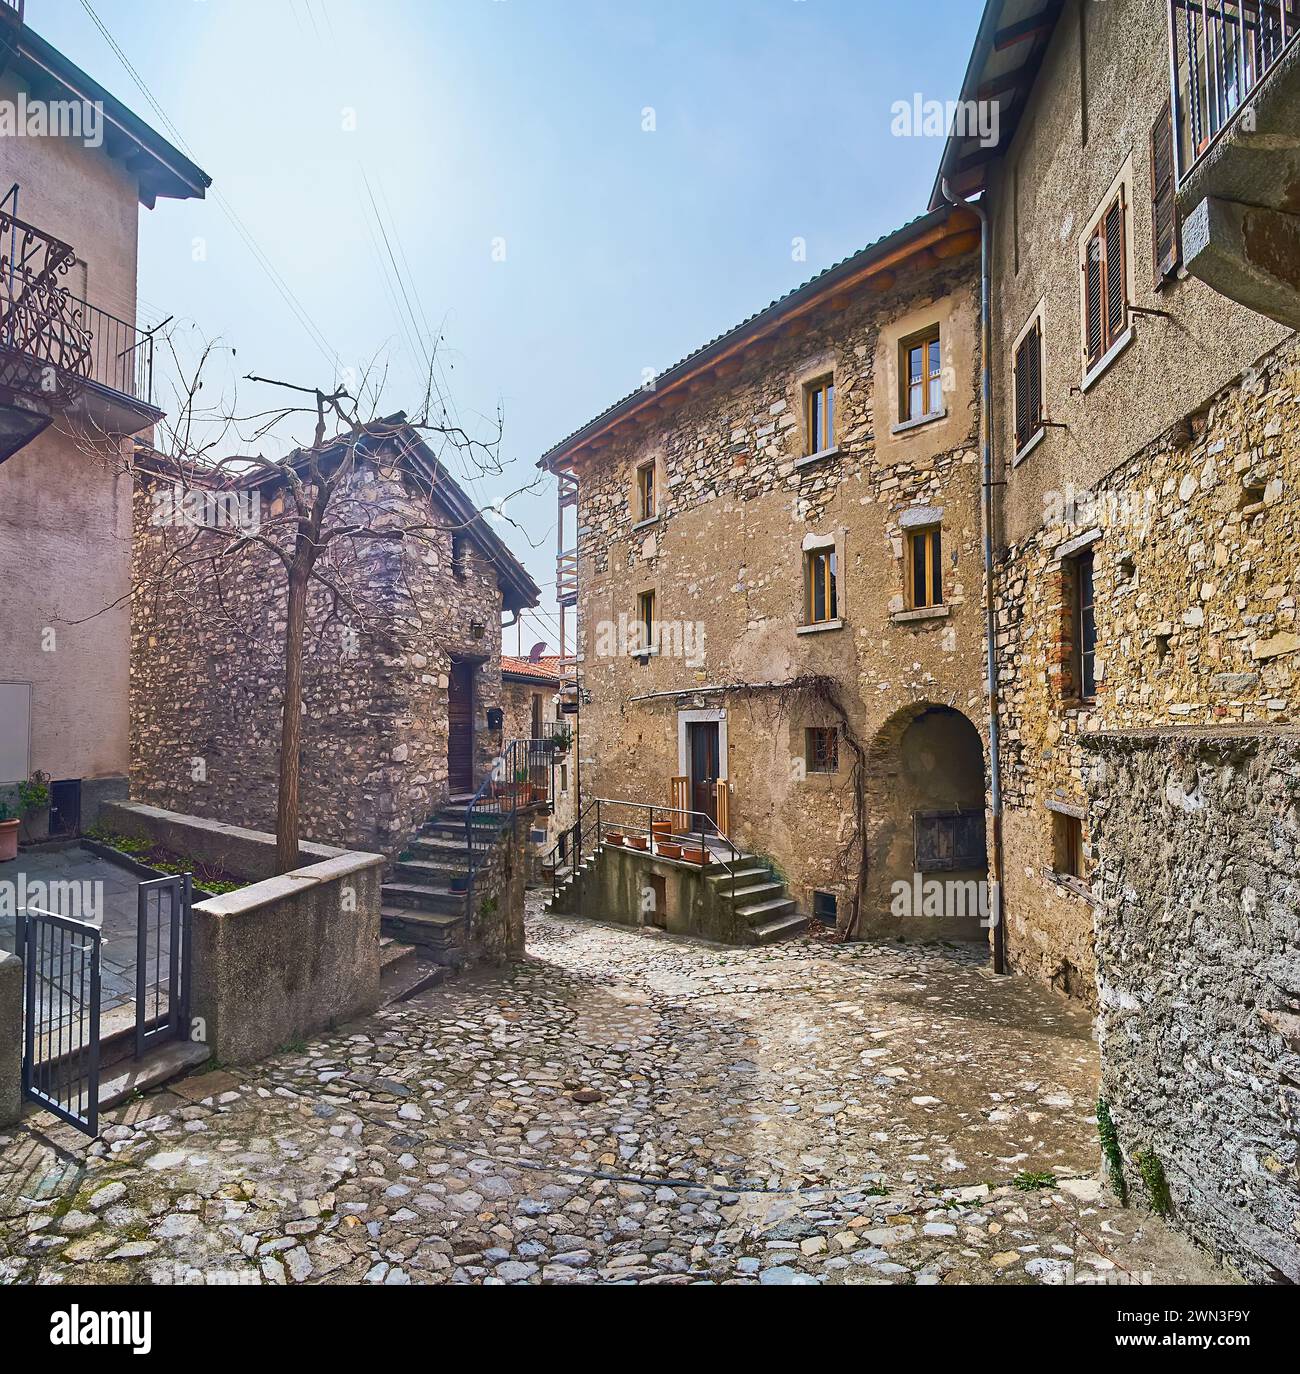 La rue en pierre dans le village de Bre avec des maisons médiévales préservées, cols voûtés, petites places, Monte Bre, Tessin, Suisse Banque D'Images